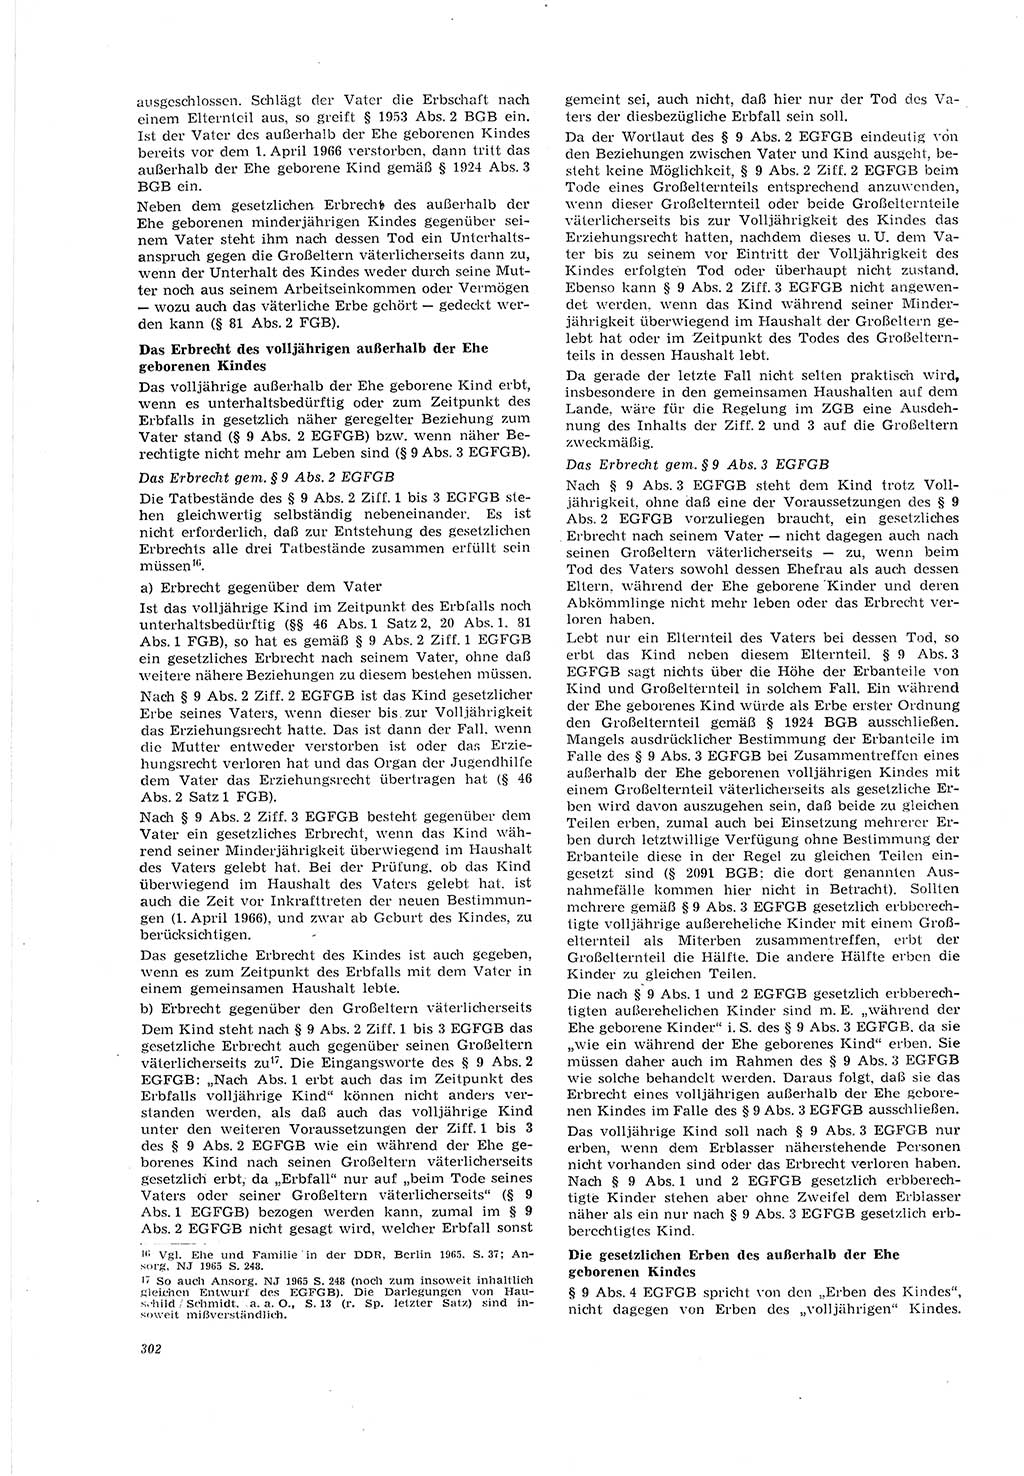 Neue Justiz (NJ), Zeitschrift für Recht und Rechtswissenschaft [Deutsche Demokratische Republik (DDR)], 20. Jahrgang 1966, Seite 302 (NJ DDR 1966, S. 302)